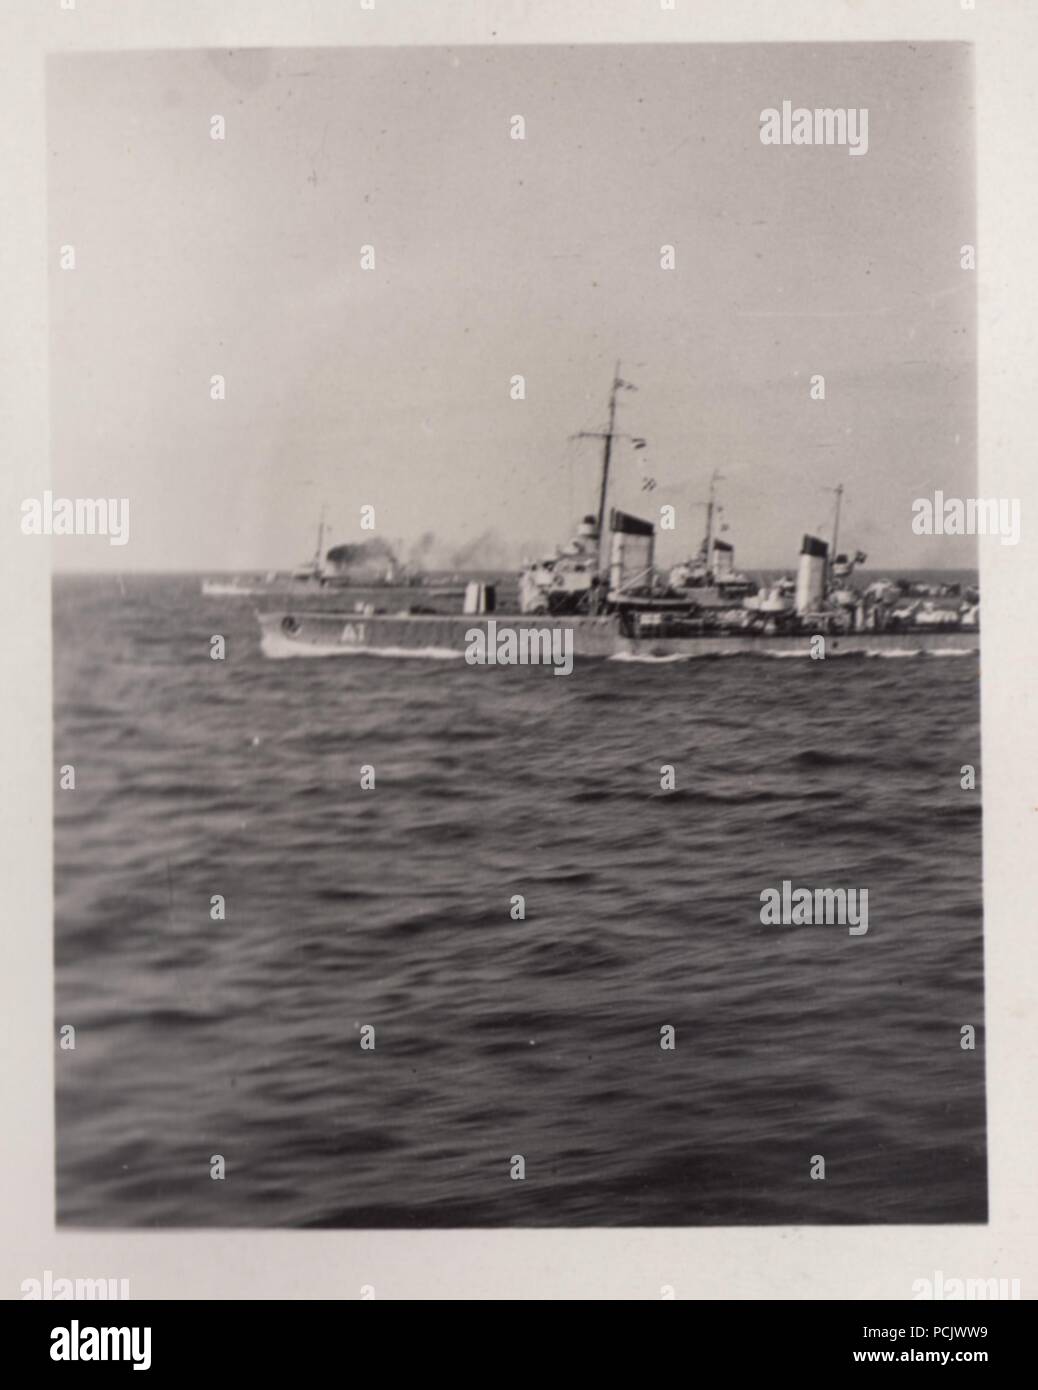 Droit de l'album photo de Oberfähnrich Wilhelm Gaul - torpilleurs allemands conformément au courant, vu de lance-torpilles Leopard pendant la guerre civile espagnole. Le navire le plus proche est Torpedo Boat Albatros. Banque D'Images